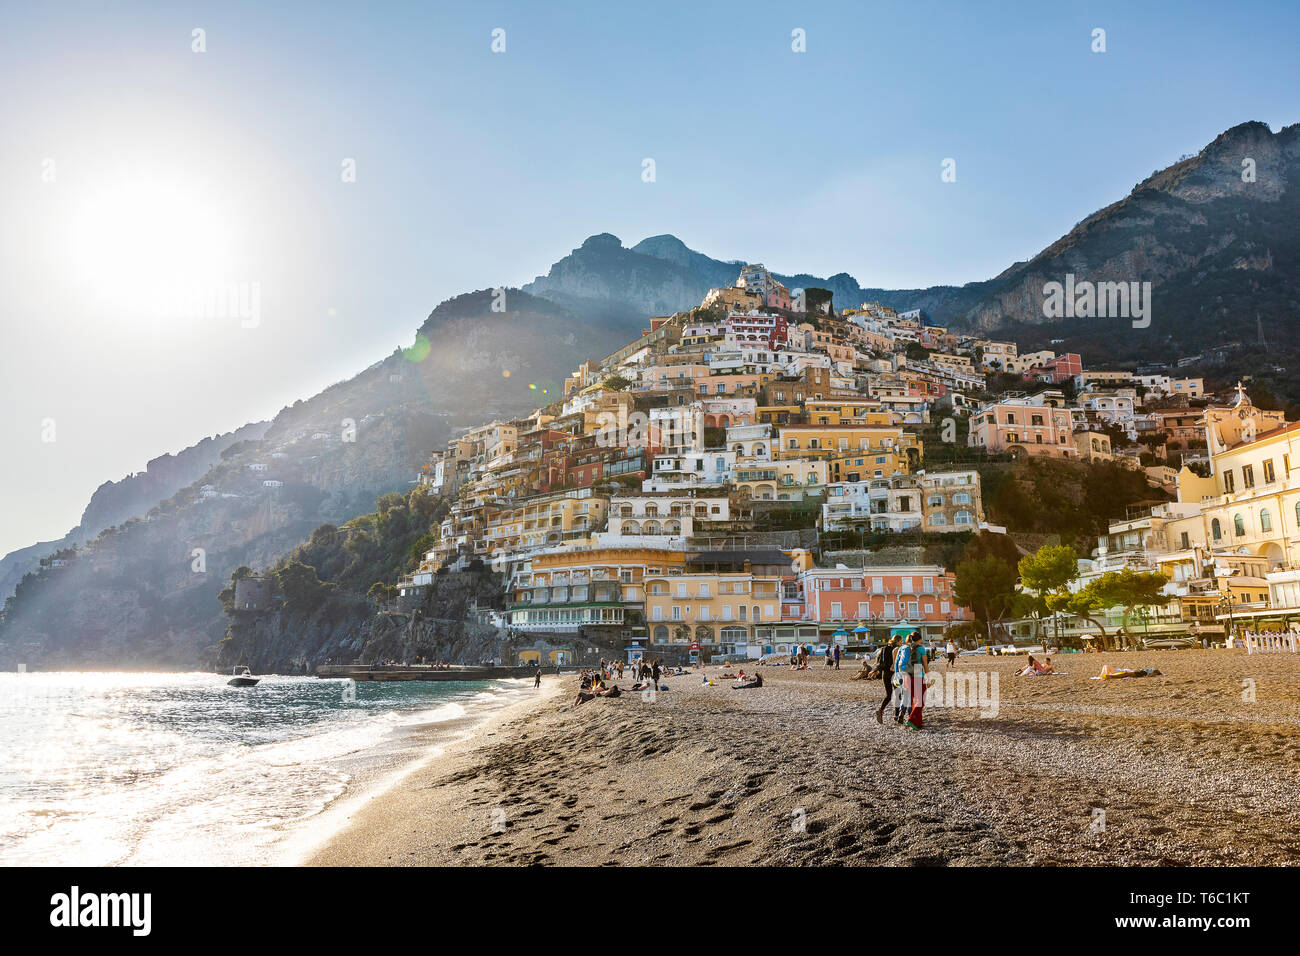 El pueblo de Positano, Italia Foto de stock